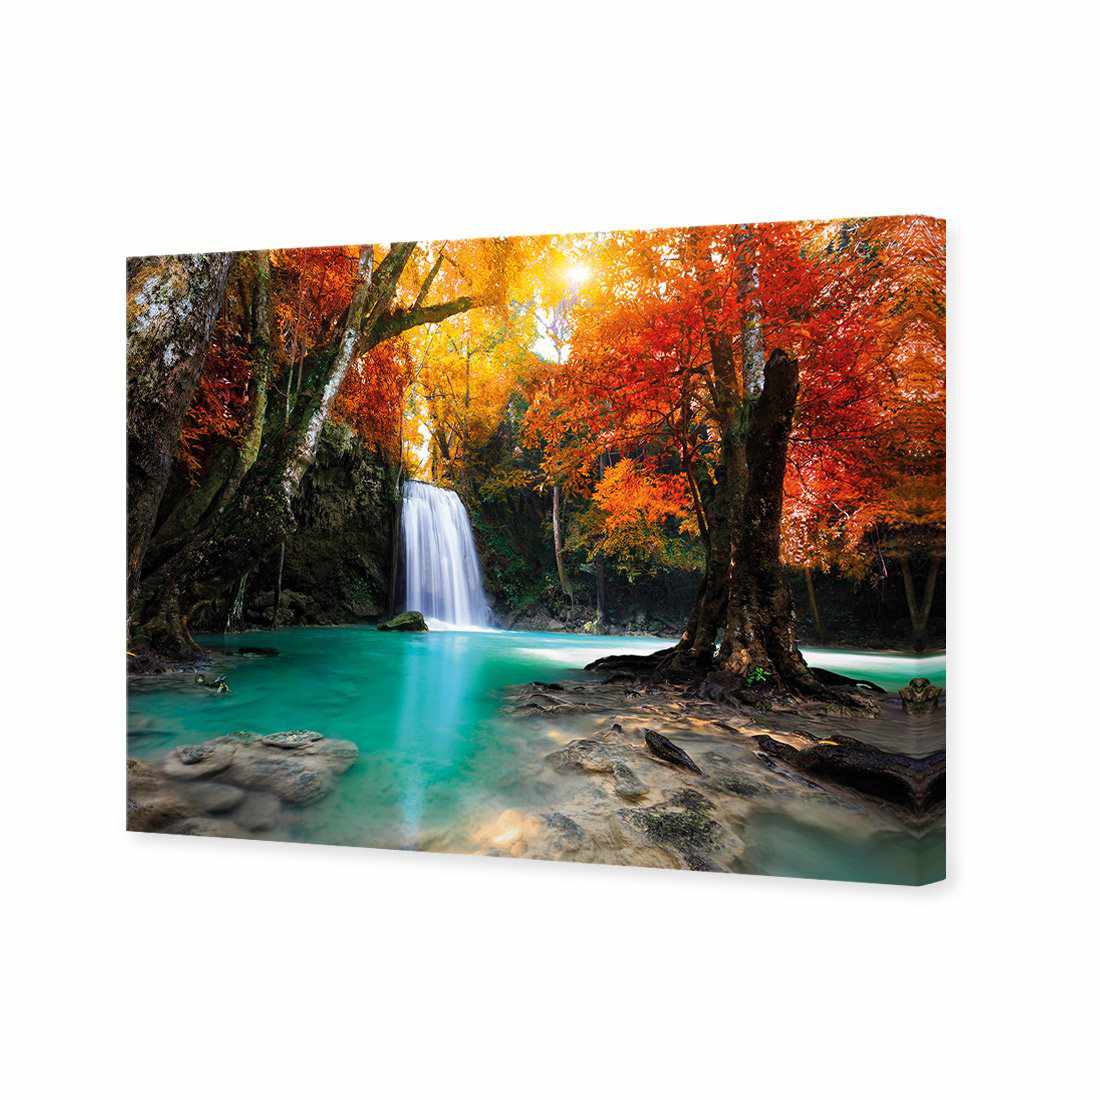 Autumn Waterfall Magic Canvas Art-Canvas-Wall Art Designs-45x30cm-Canvas - No Frame-Wall Art Designs